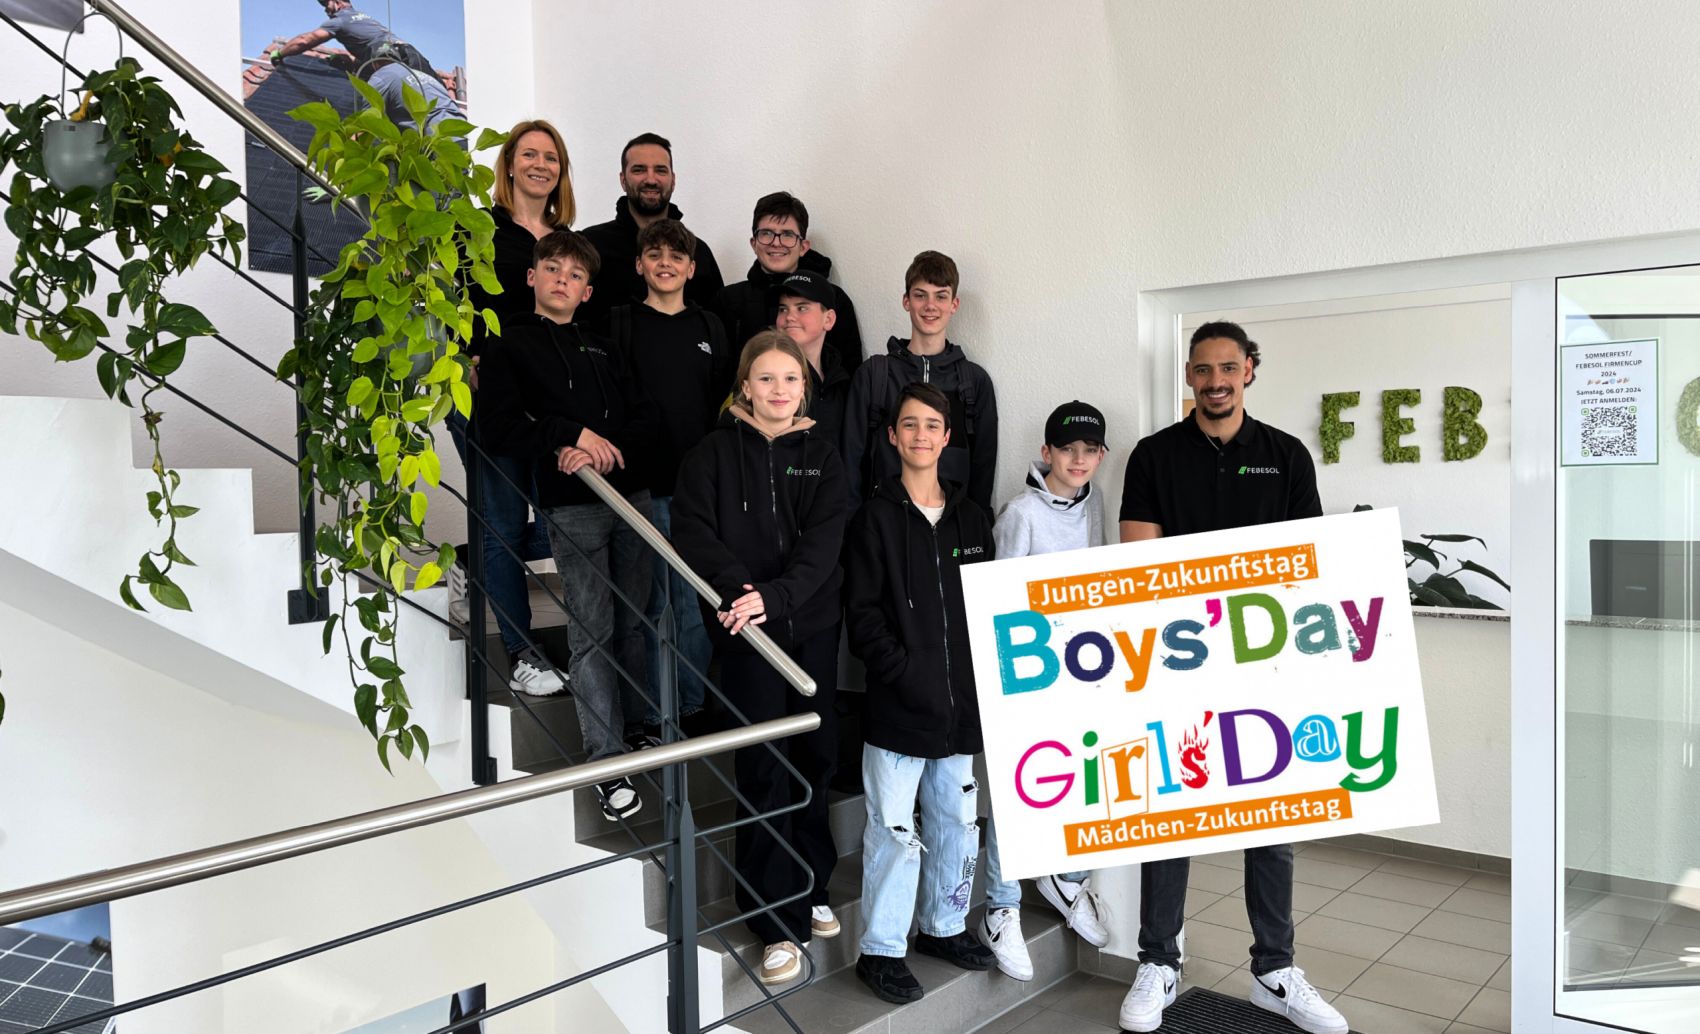 Eine Gruppe von Jungen und Mädchen sowie zwei Erwachsene stehen auf einer Treppe und halten ein buntes Schild mit der Aufschrift „Girls‘ & Boys‘ Day bei FEBESOL“. Die Szene scheint sich in einem Innenbereich in der Nähe einer Pflanze zu befinden.